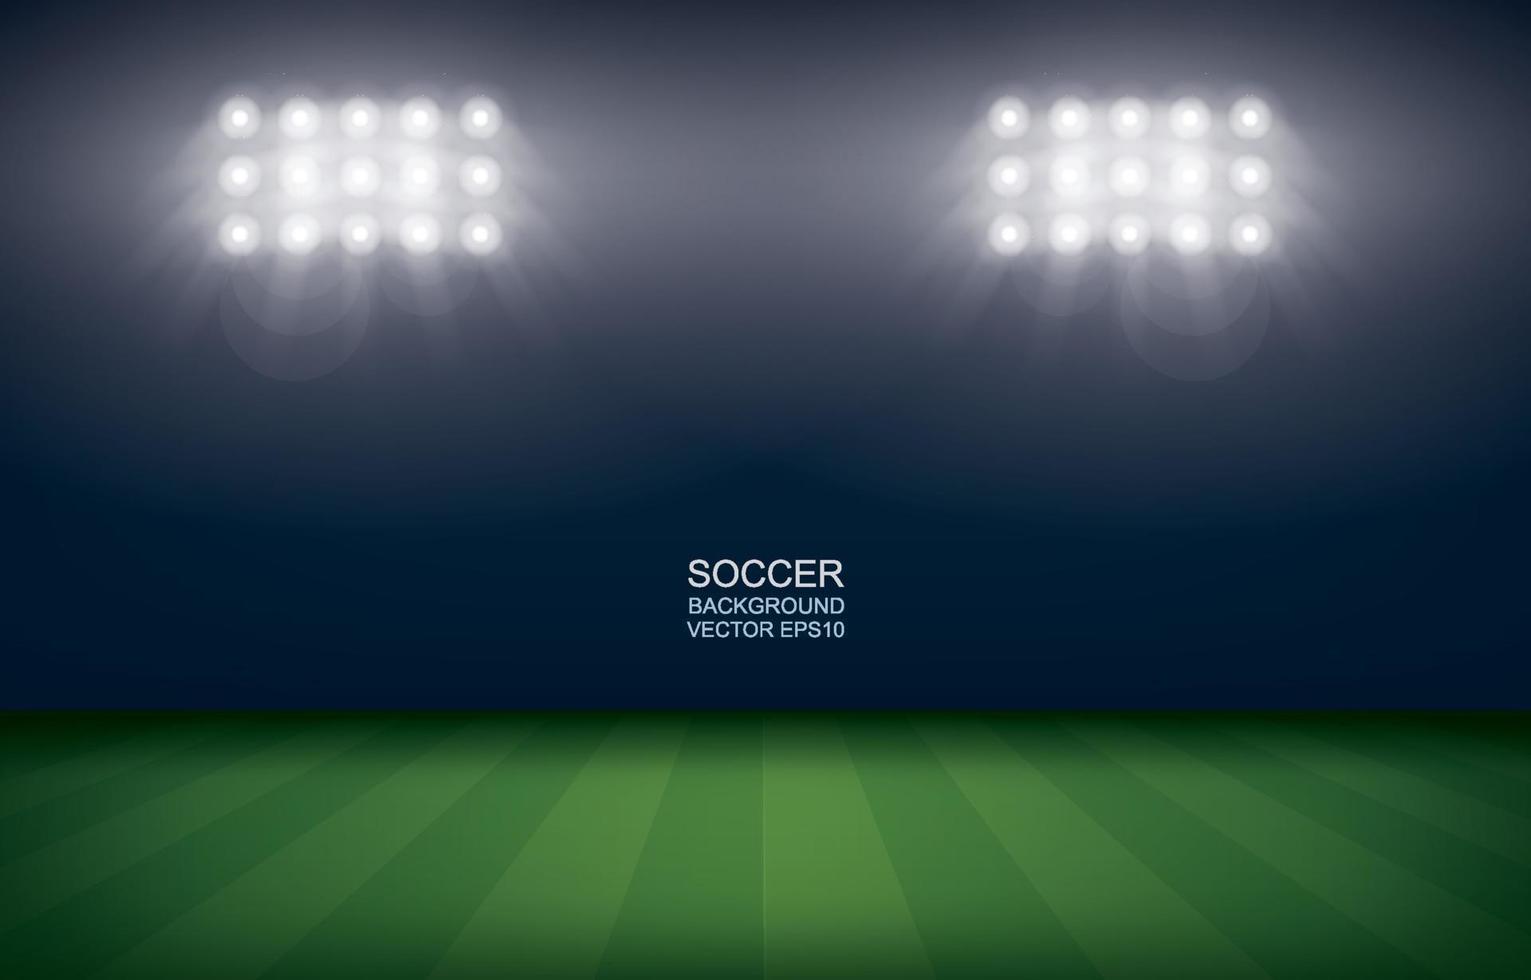 Football field or soccer field stadium background. Vector illustration.